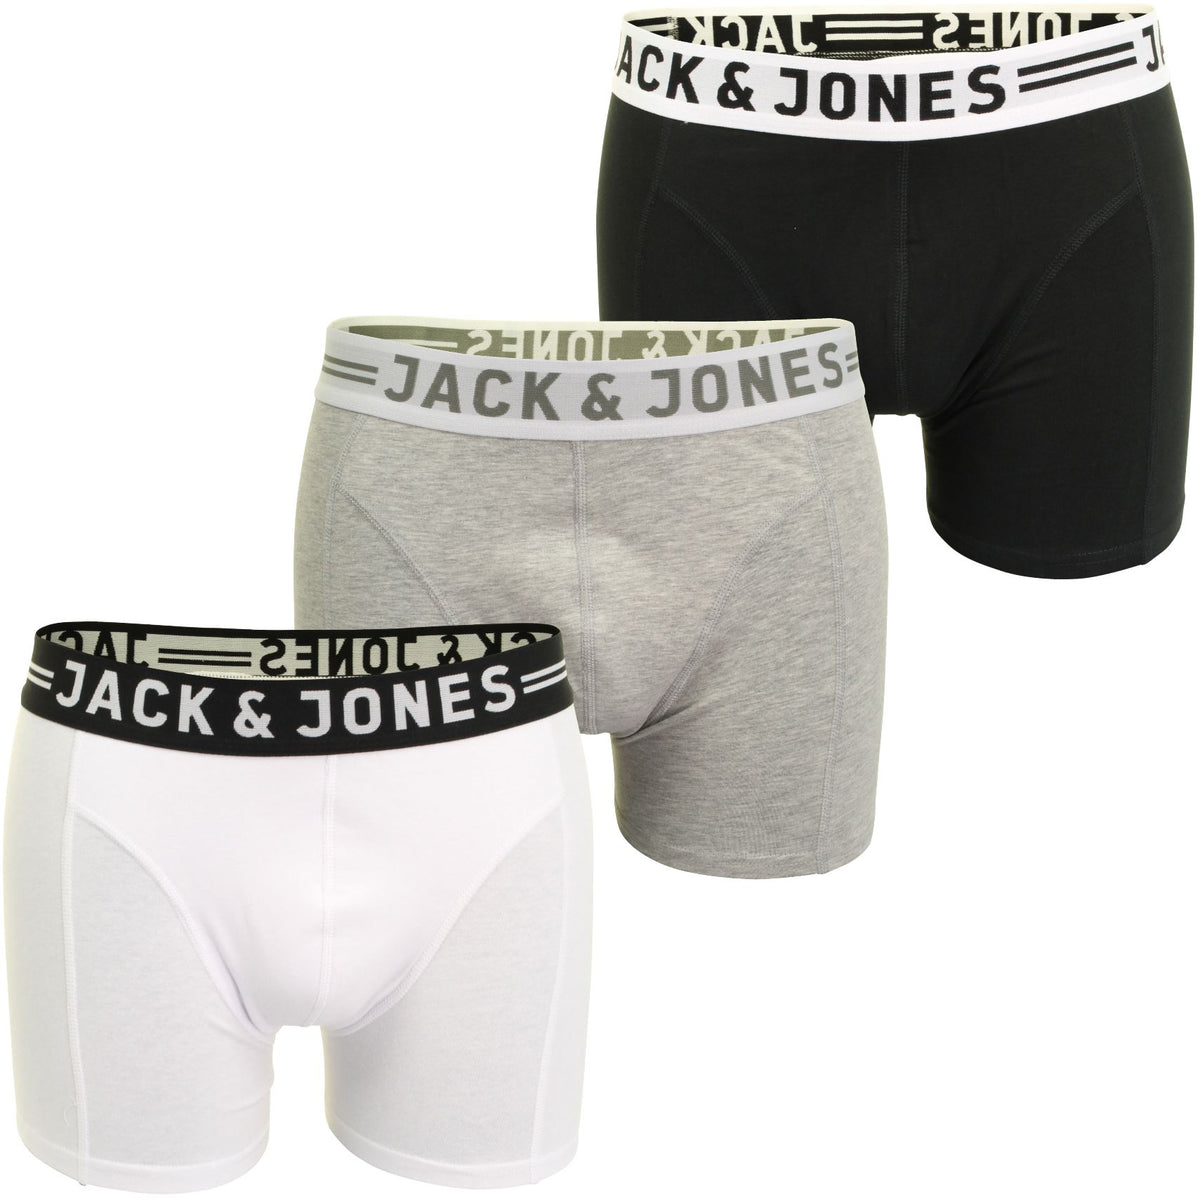 Jack & Jones 'Sense' Mens Boxer Shorts/ Trunks (3-Pack), 01, 12081832, Grey Melange/ Black/ White